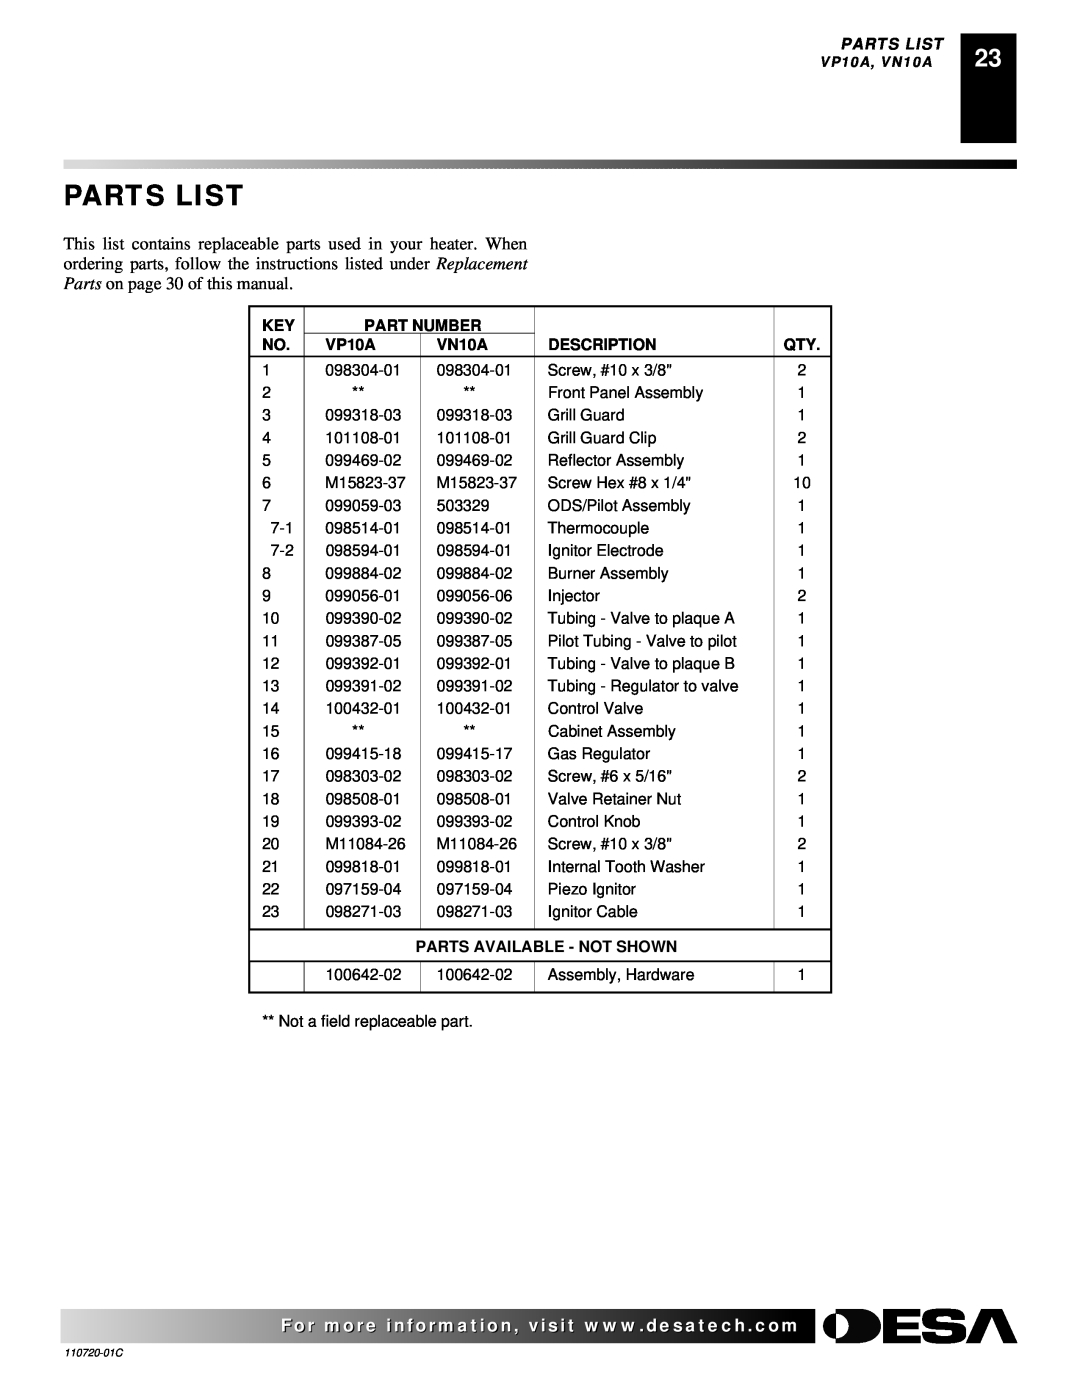 Desa VN10A installation manual Parts List, Part Number, VP10A, Description, Parts Available - Not Shown 